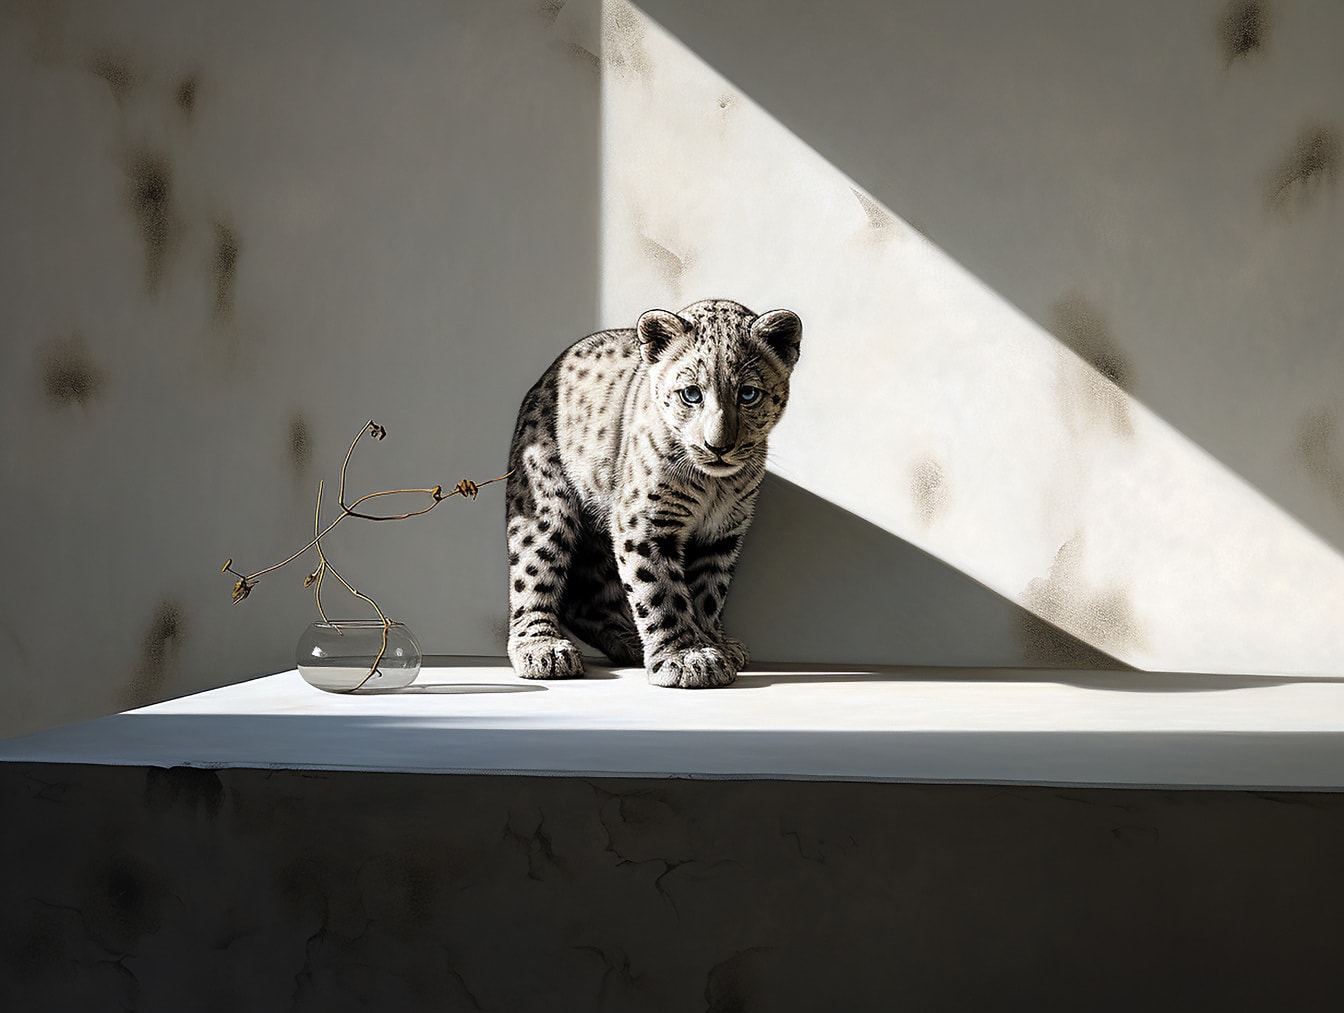 Montase foto 3D macan tutul salju muda yang menggemaskan dengan vas kaca